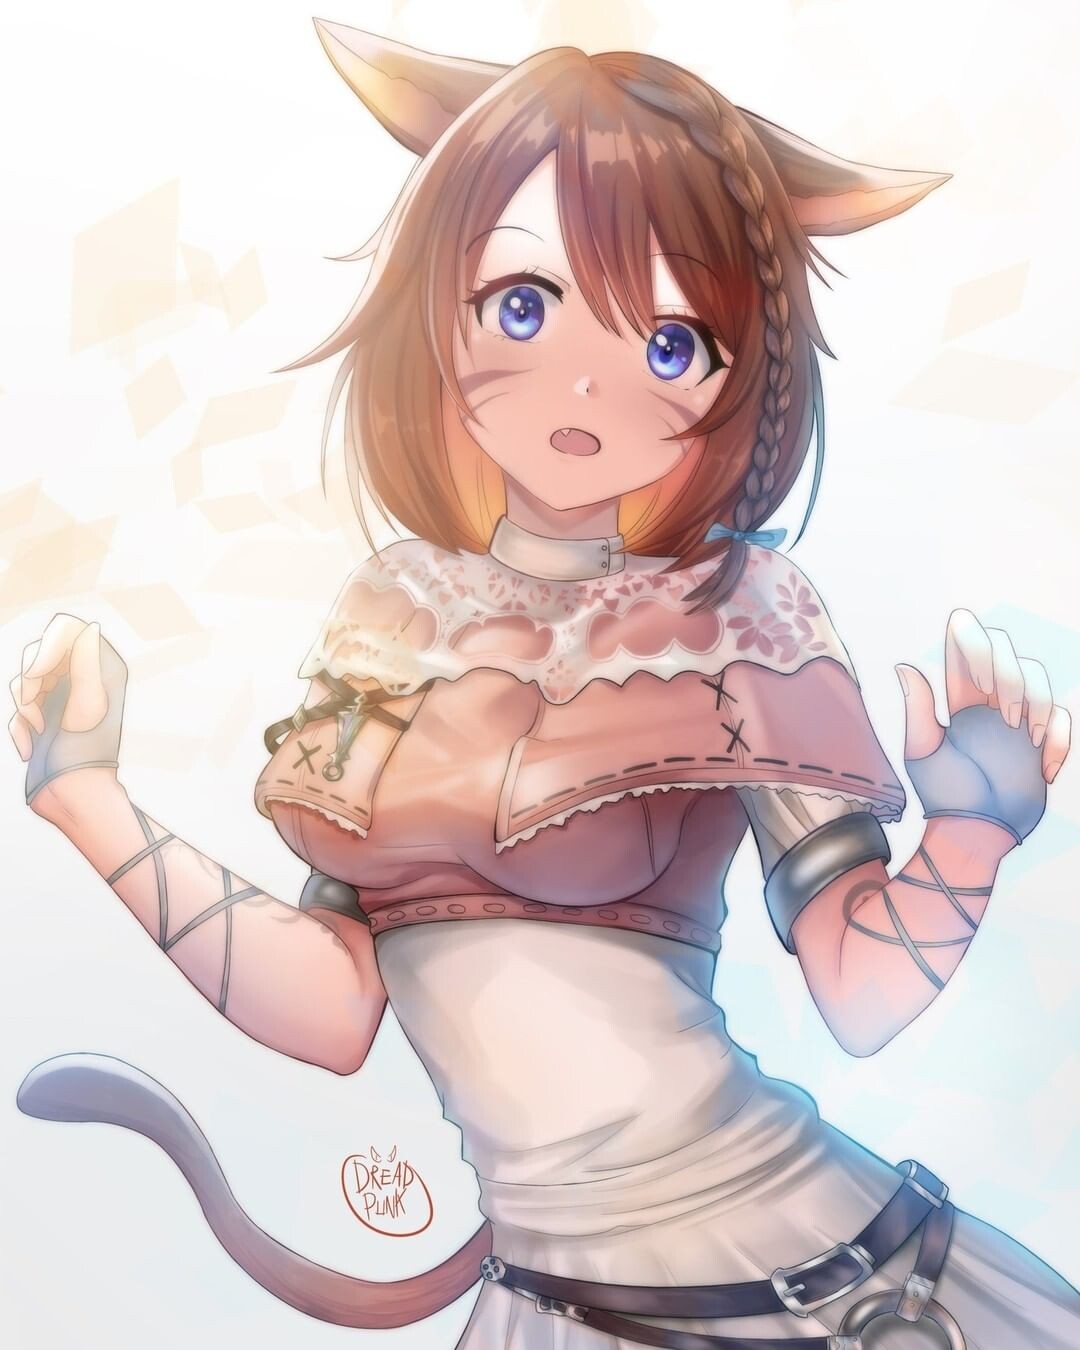 Cute anime cat girl by arendevil on DeviantArt